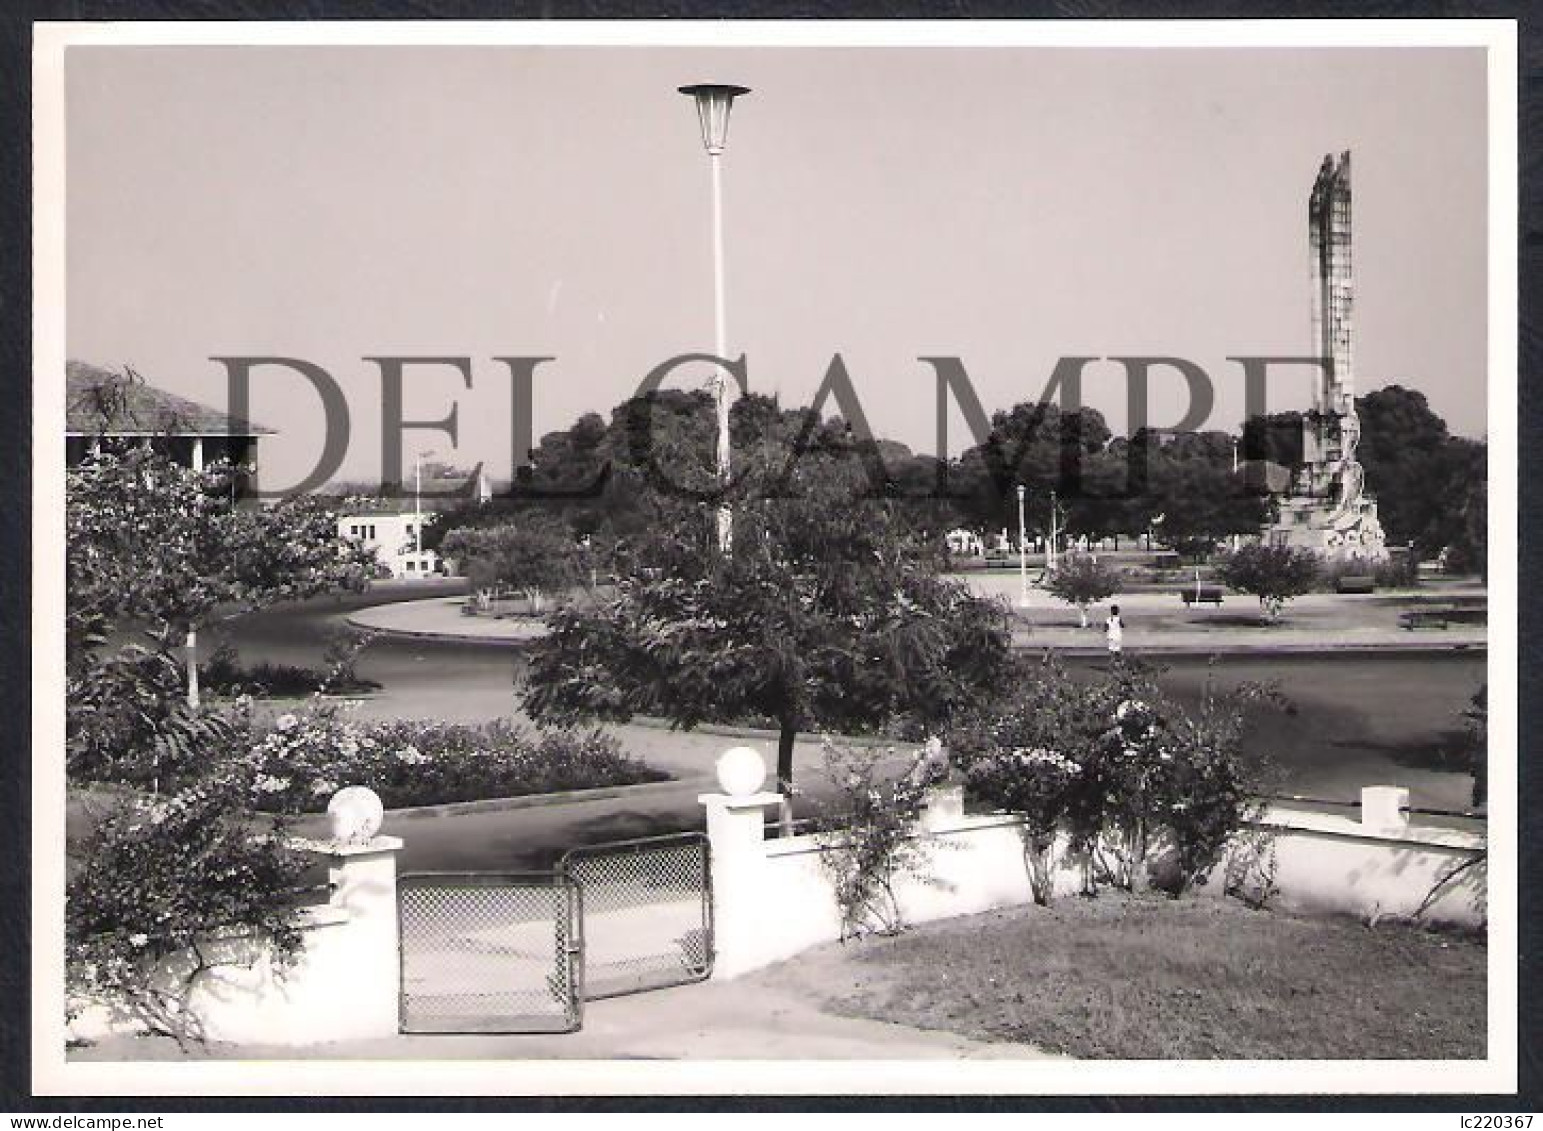 LOT W/23 REAL PHOTOS PORTUGAL GUINÉ GUINEA - DIVERSAS VISTAS DA CIDADE DE BOLAMA E DE DIVERSAS ACTIVIDADES - 1960'S - Afrika